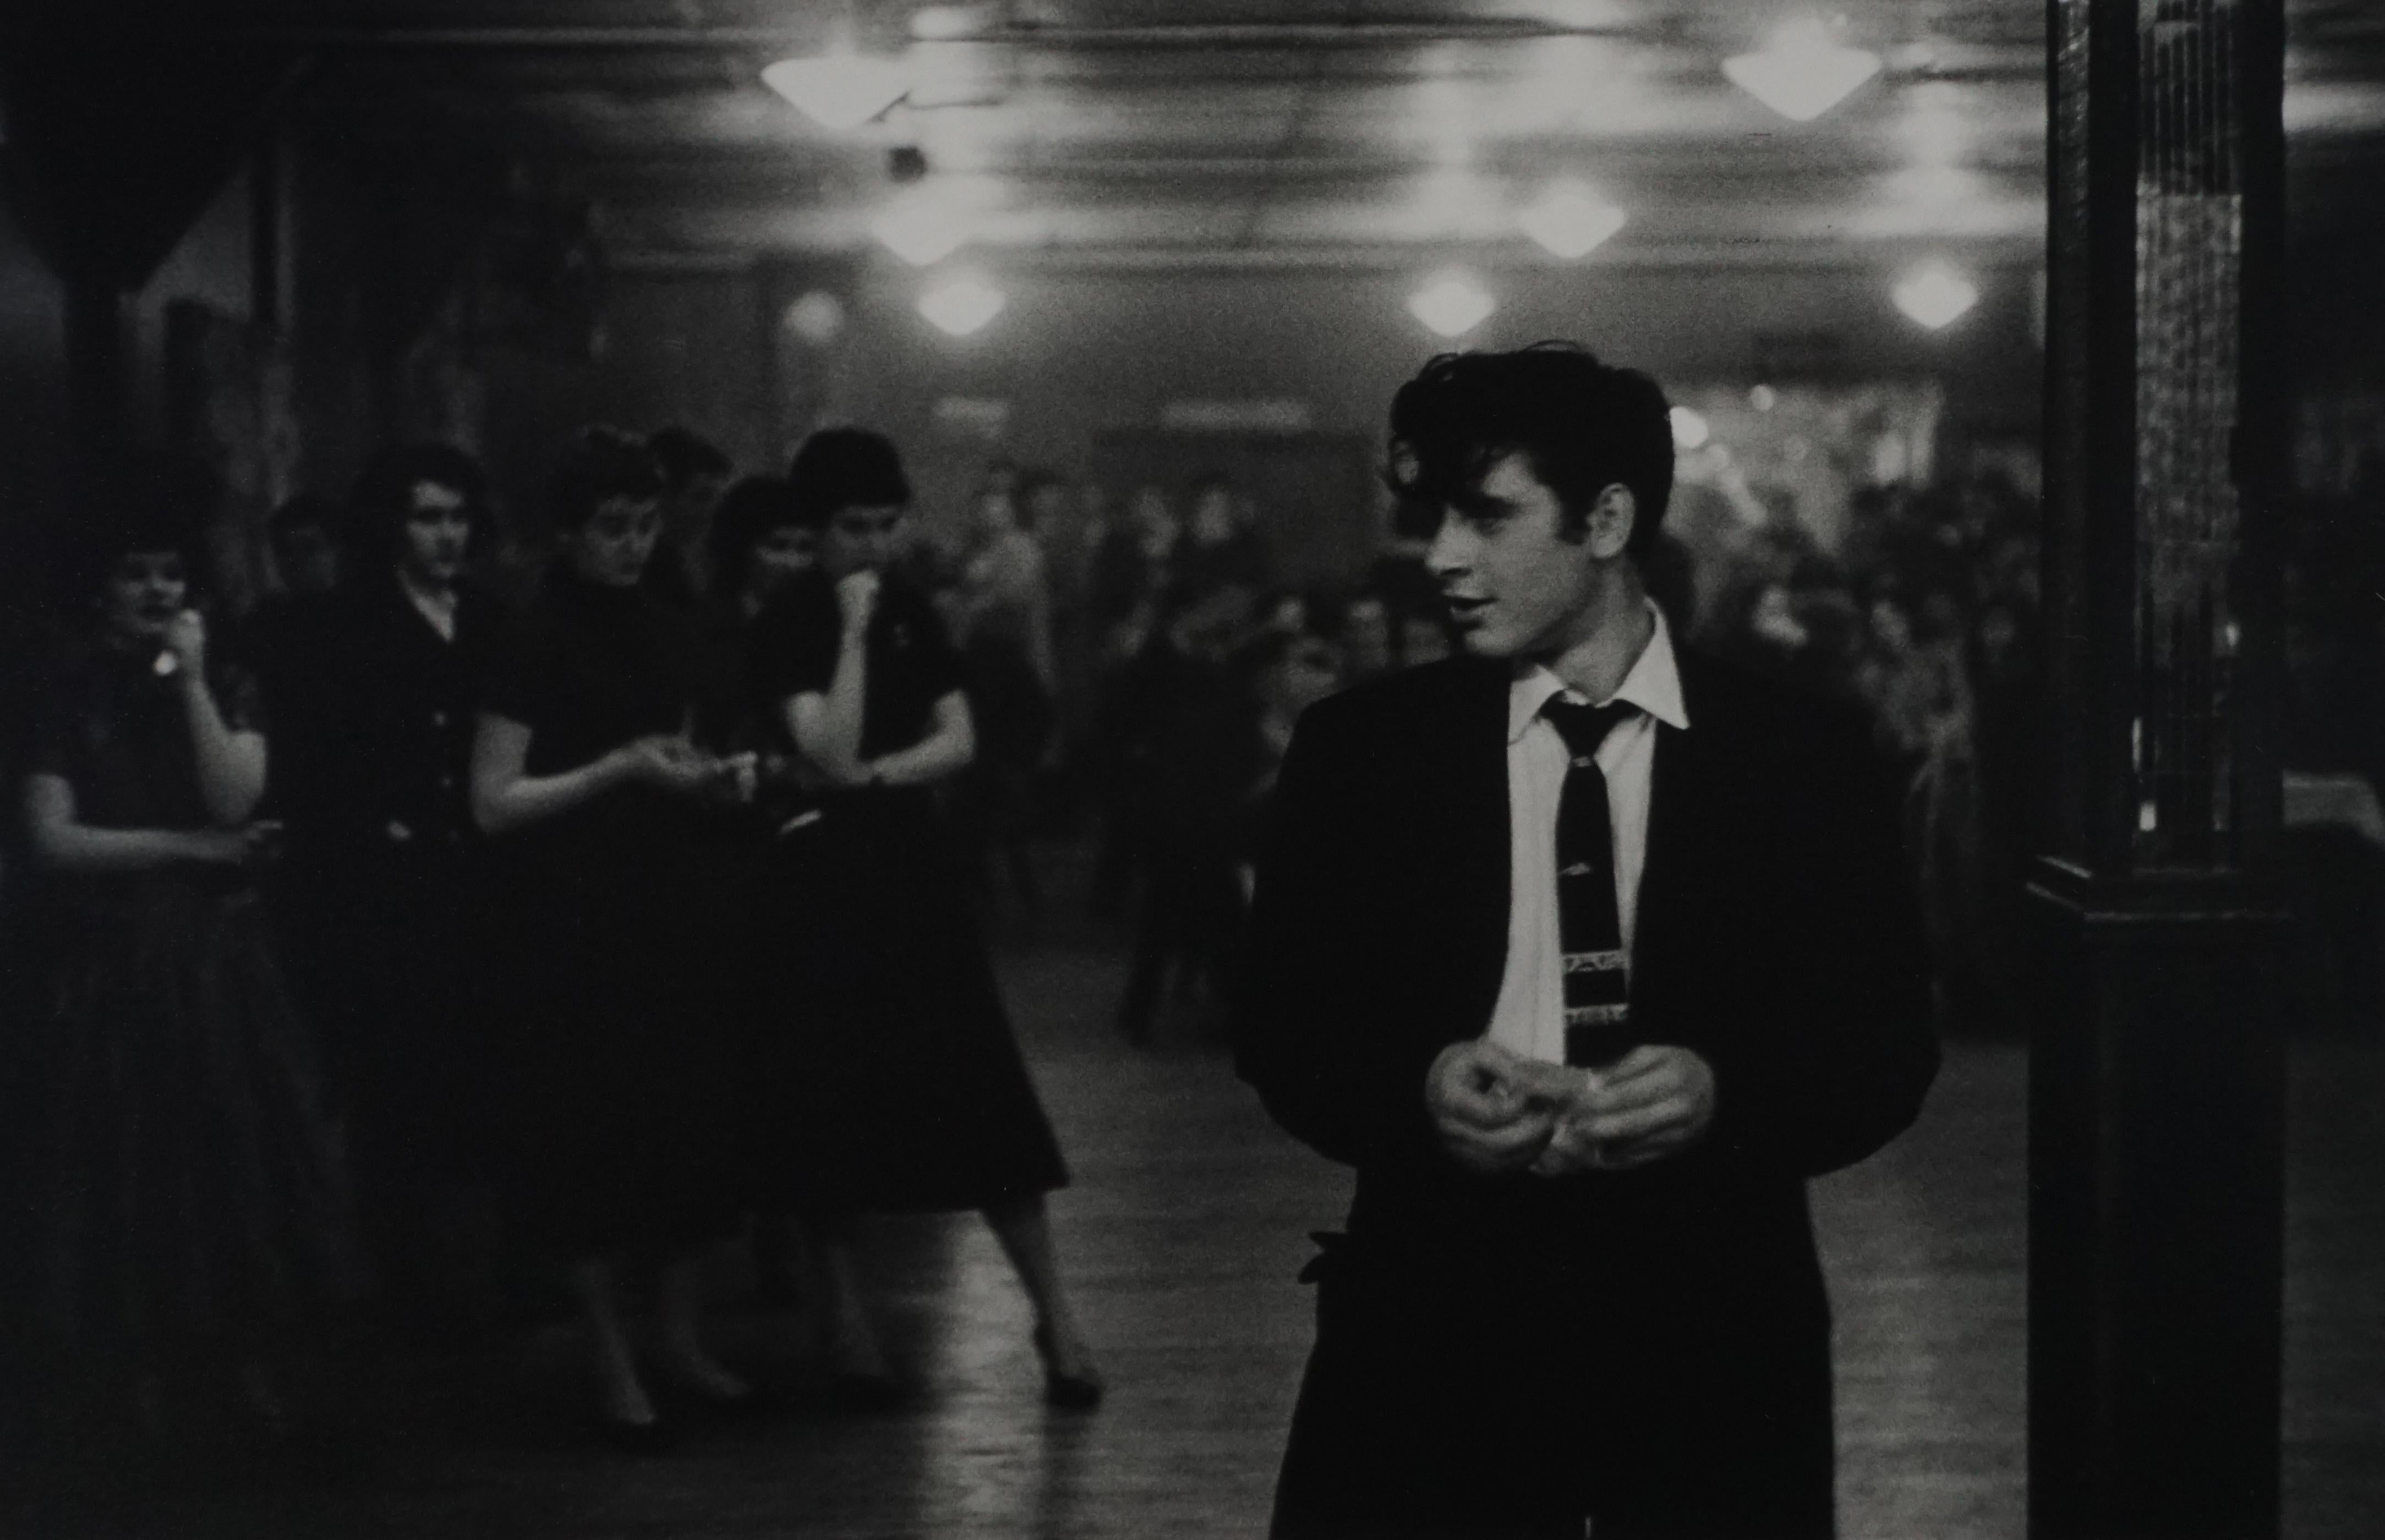 George S. Zimbel Black and White Photograph - Irish Dancehall, The Bronx, 1954 (printed 2006)